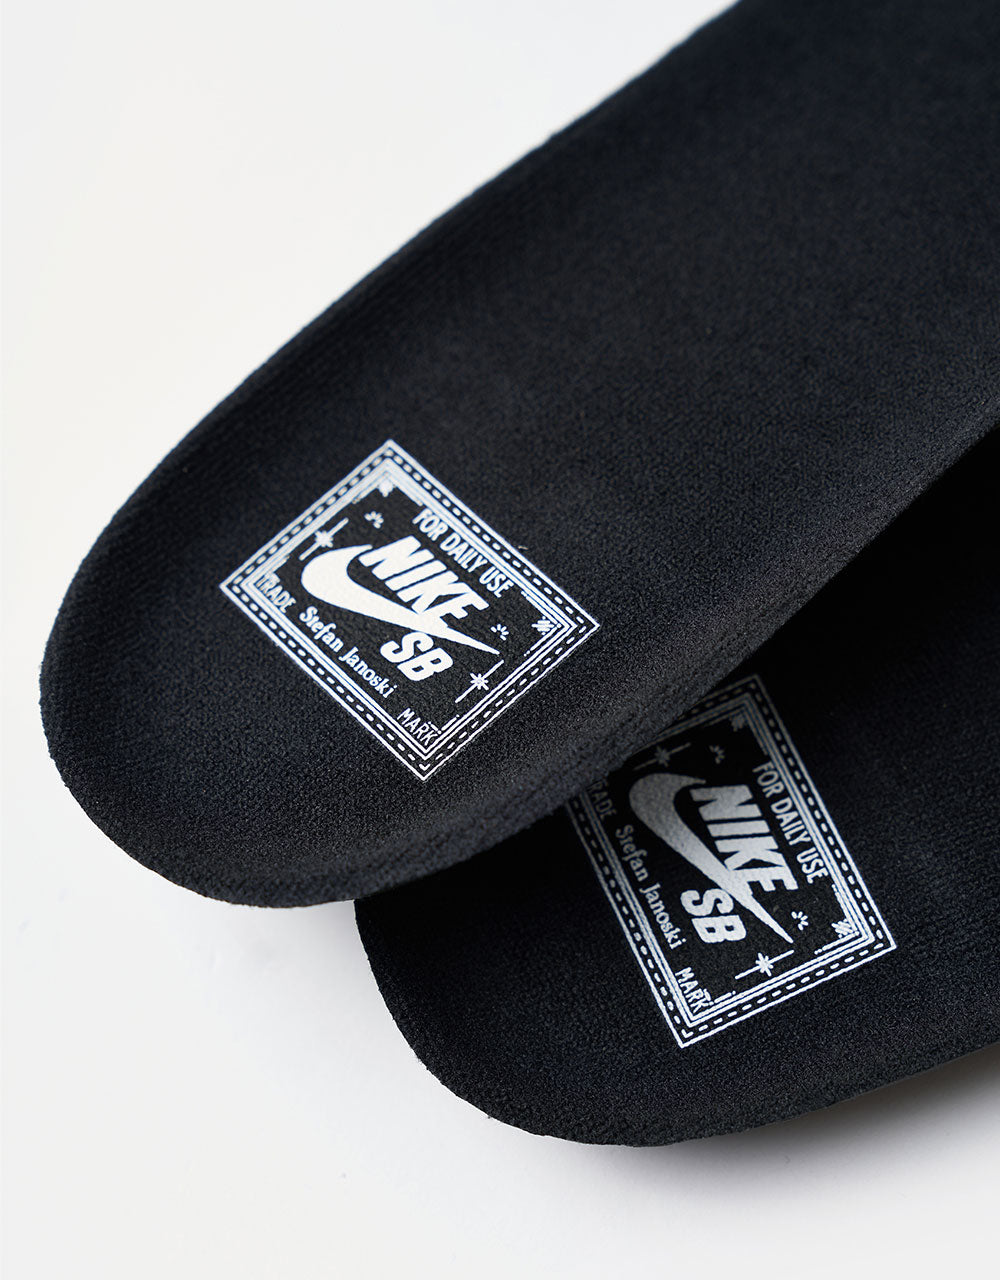 Nike SB Zoom Janoski OG+ Skate Shoes - Black/White-Black-White-Black-Gum Lt Brown